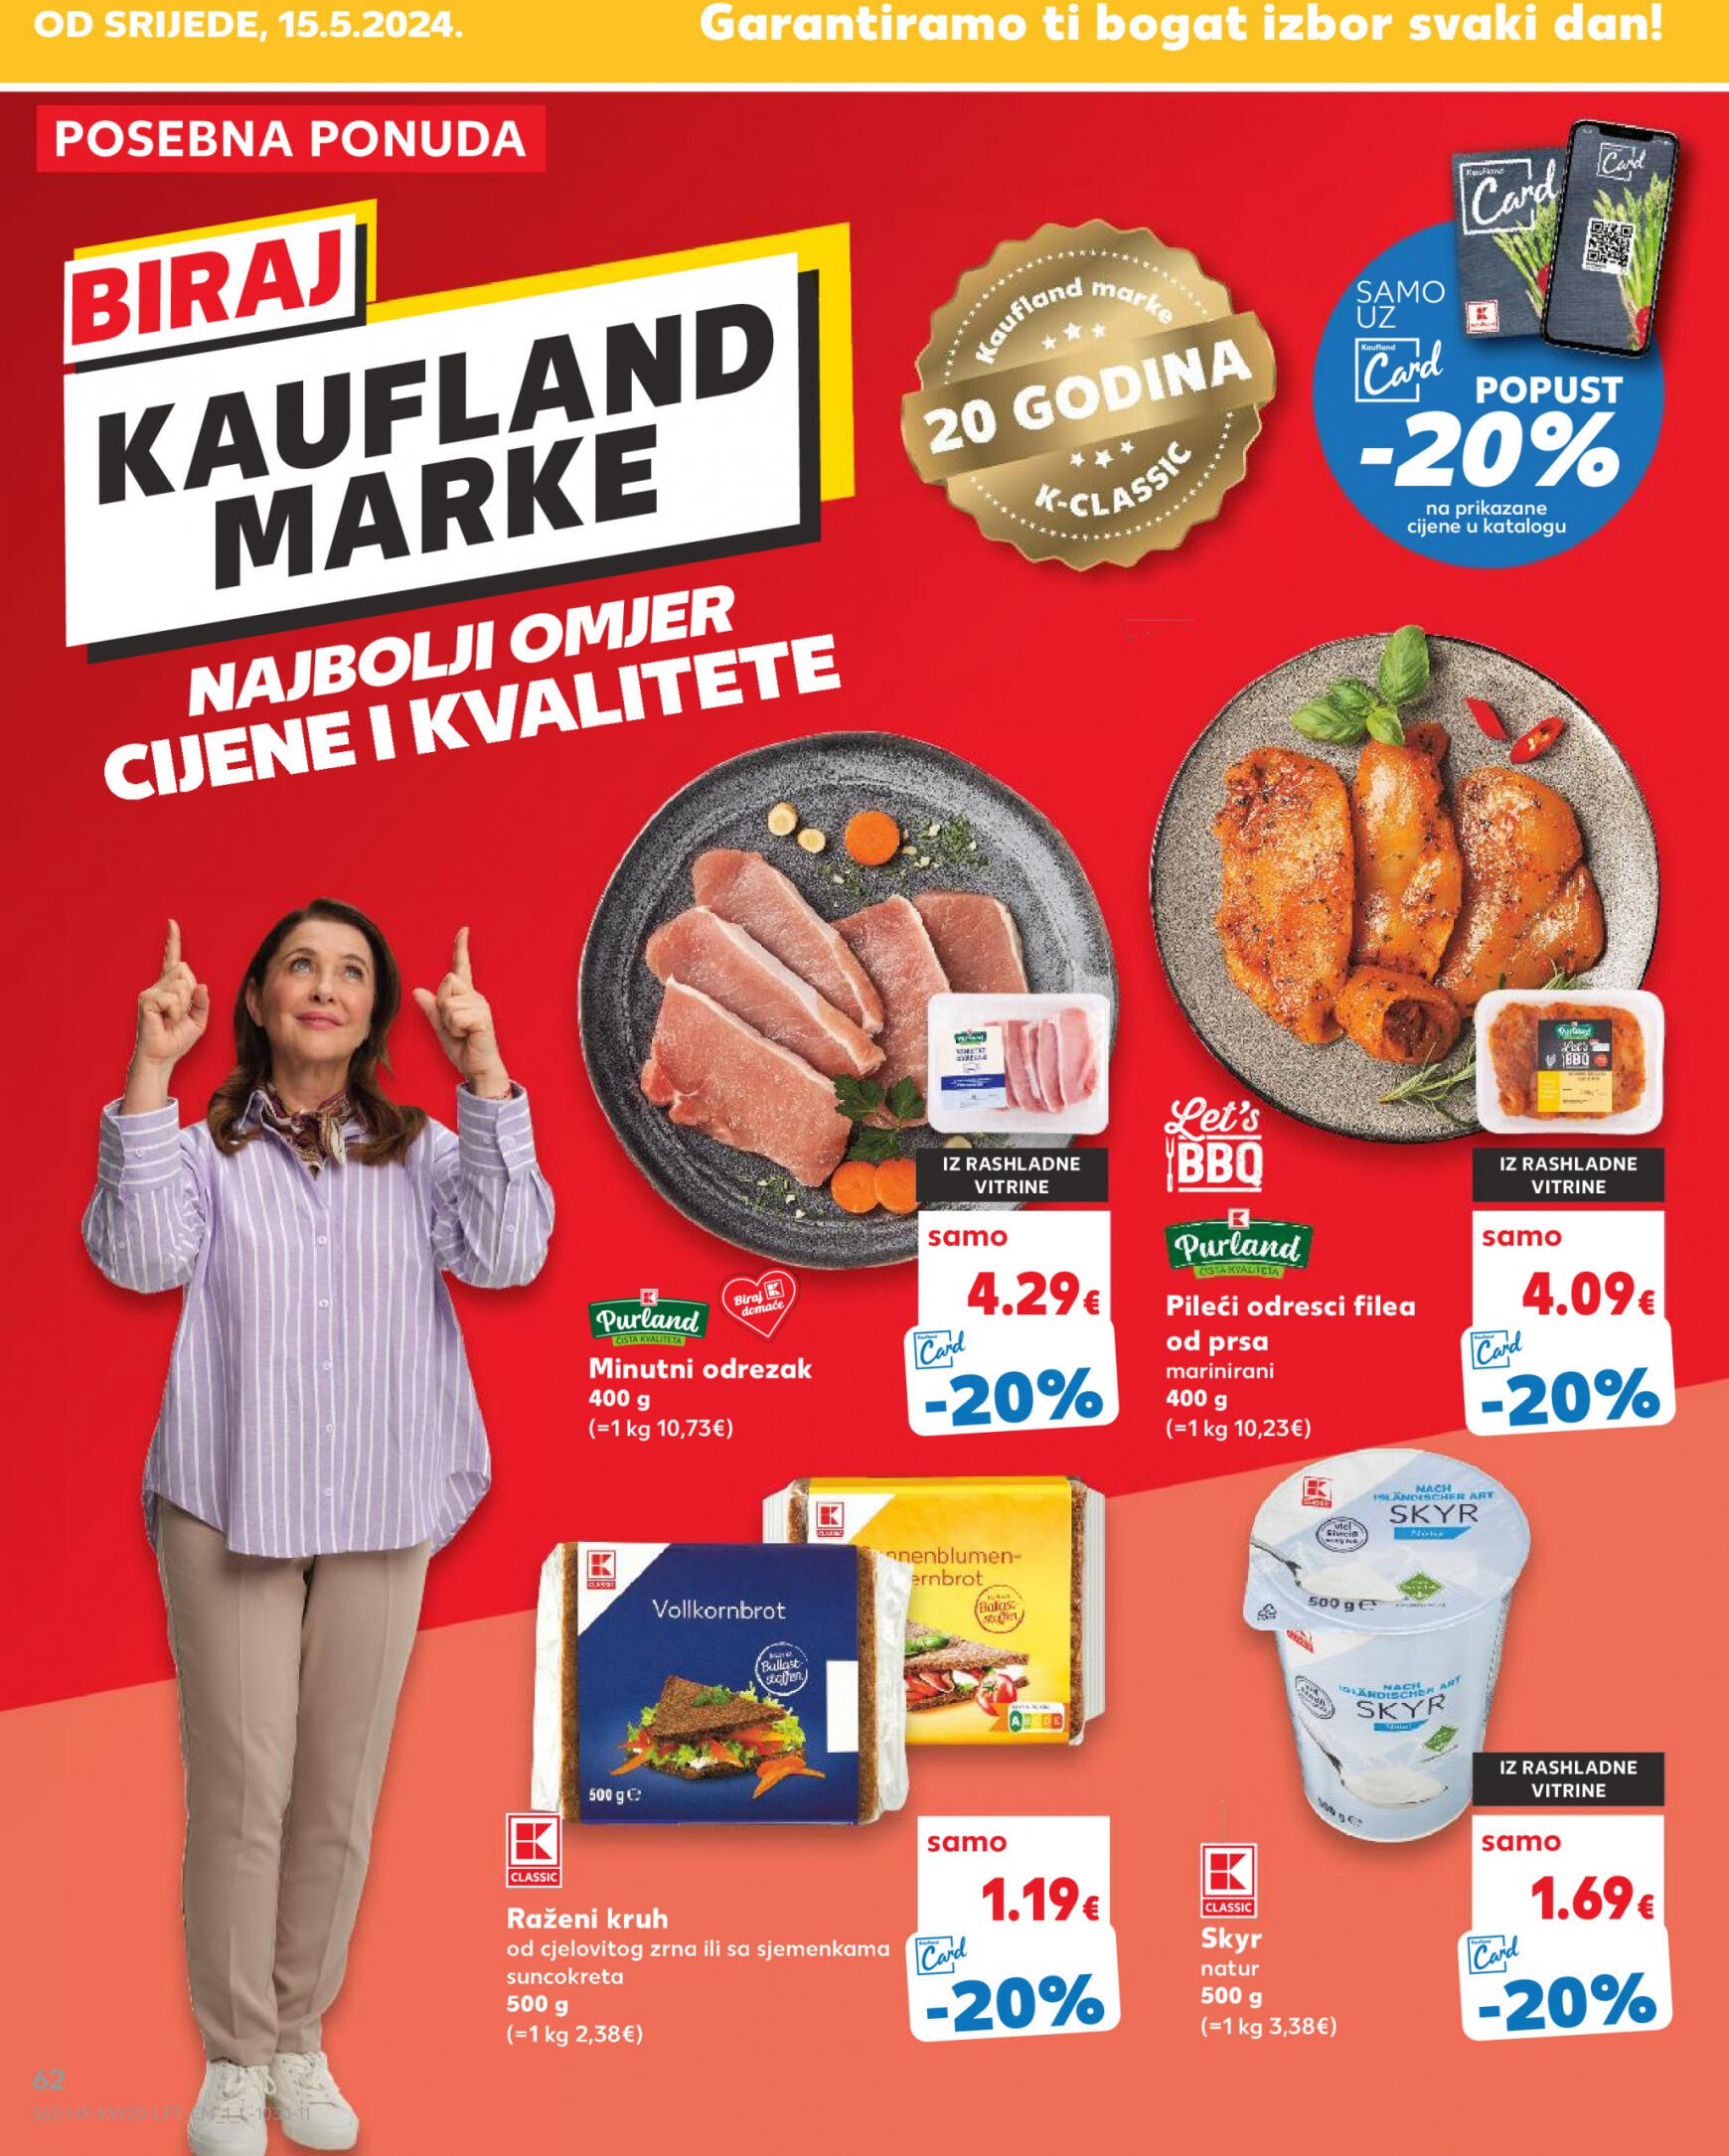 kaufland - Novi katalog Kaufland 15.05. - 21.05. - page: 62